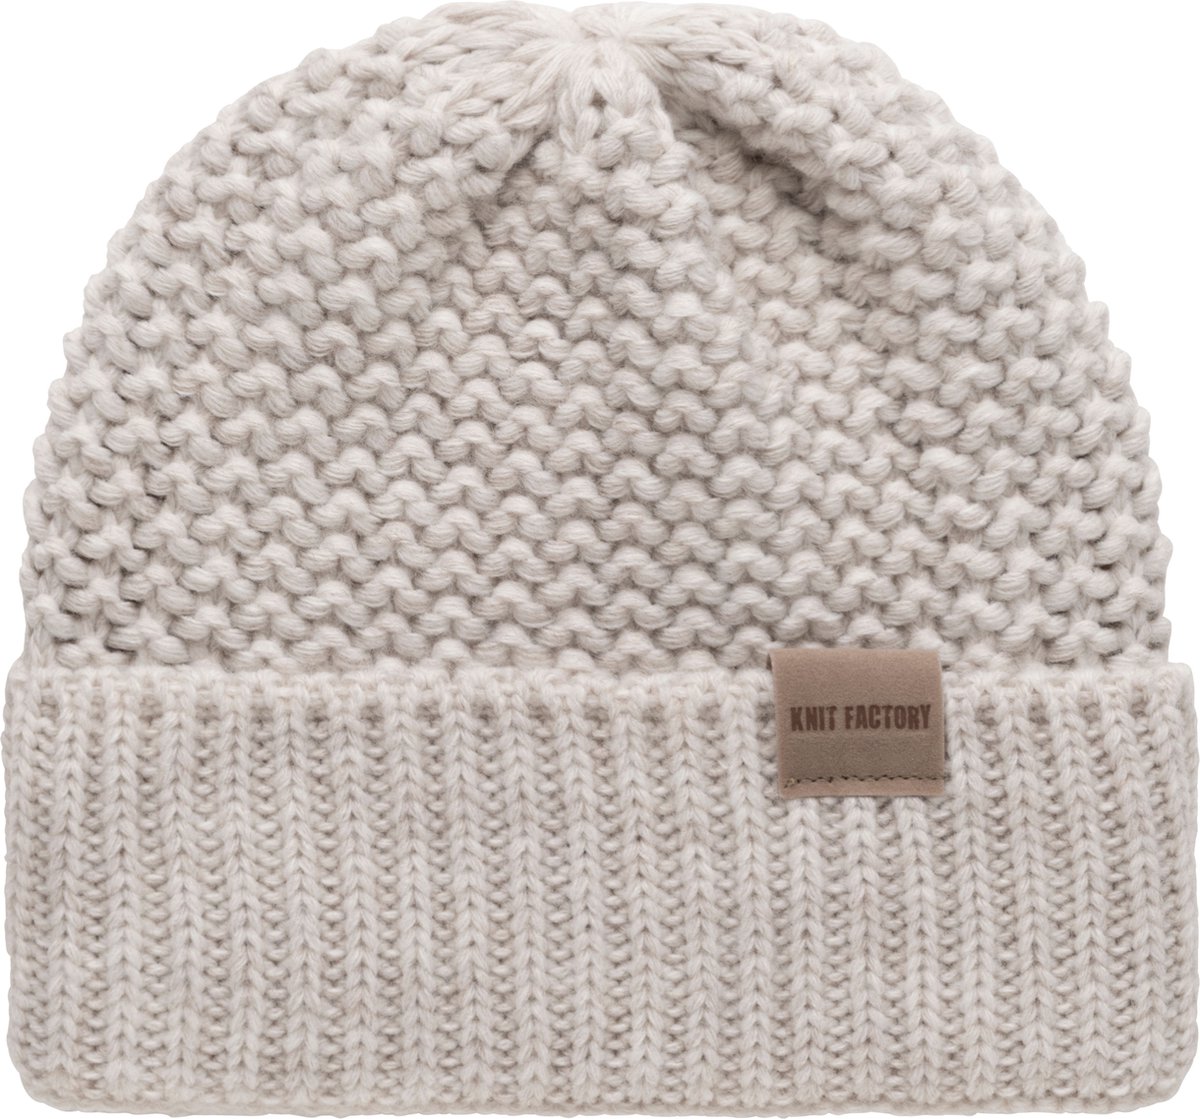 Knit Factory Carry Gebreide Muts Heren & Dames - Beanie hat - Beige - Grofgebreid - Warme Wintermuts - Unisex - One Size